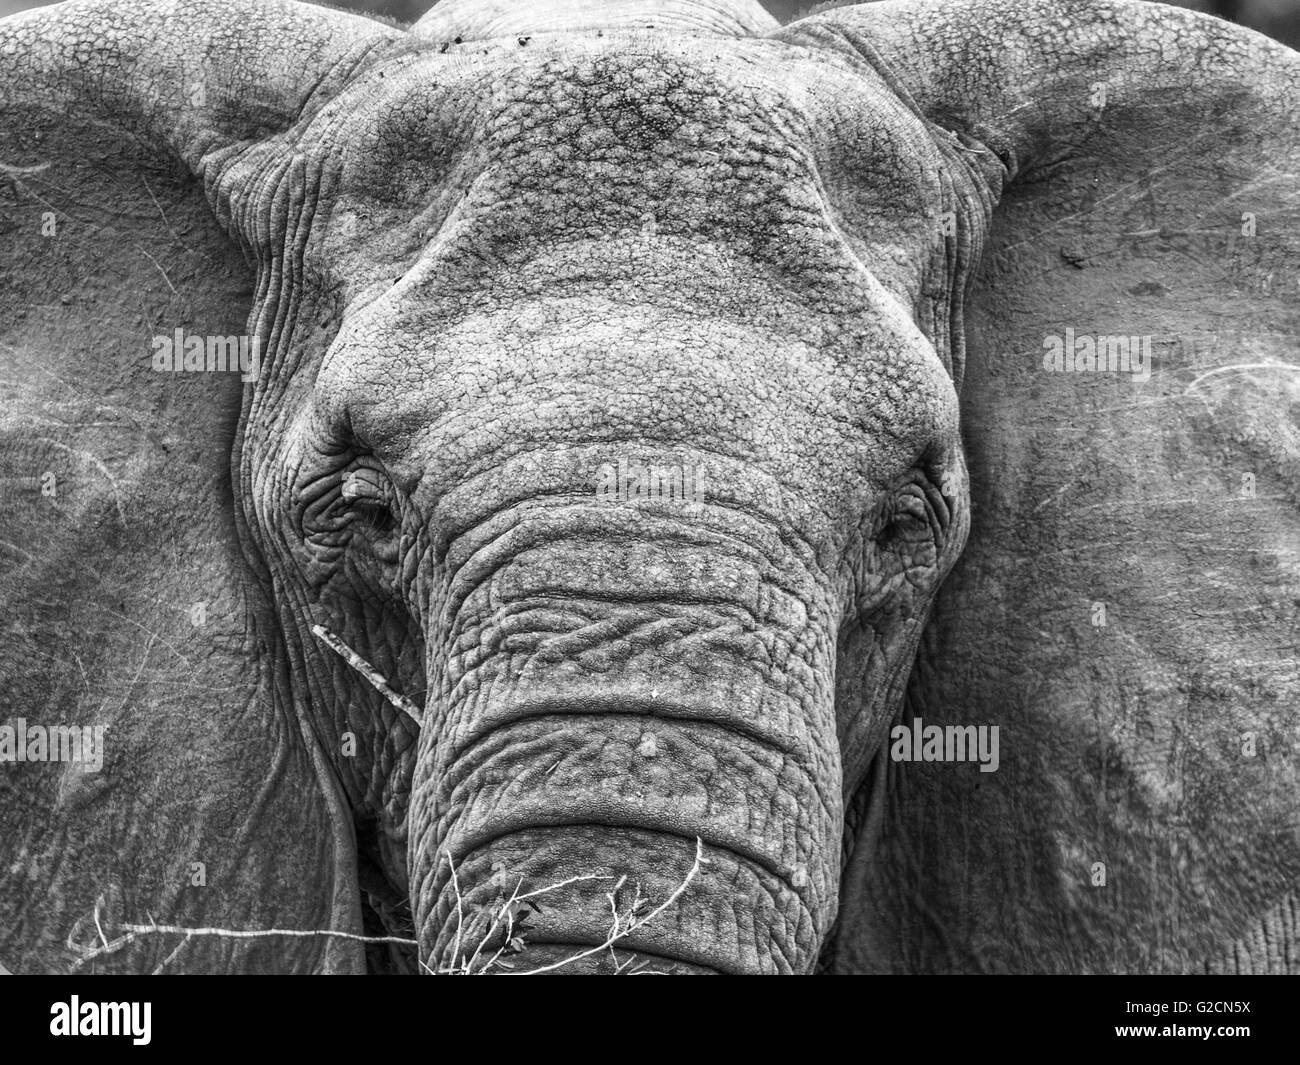 L'éléphant d'close up et personnels en monochrome Banque D'Images